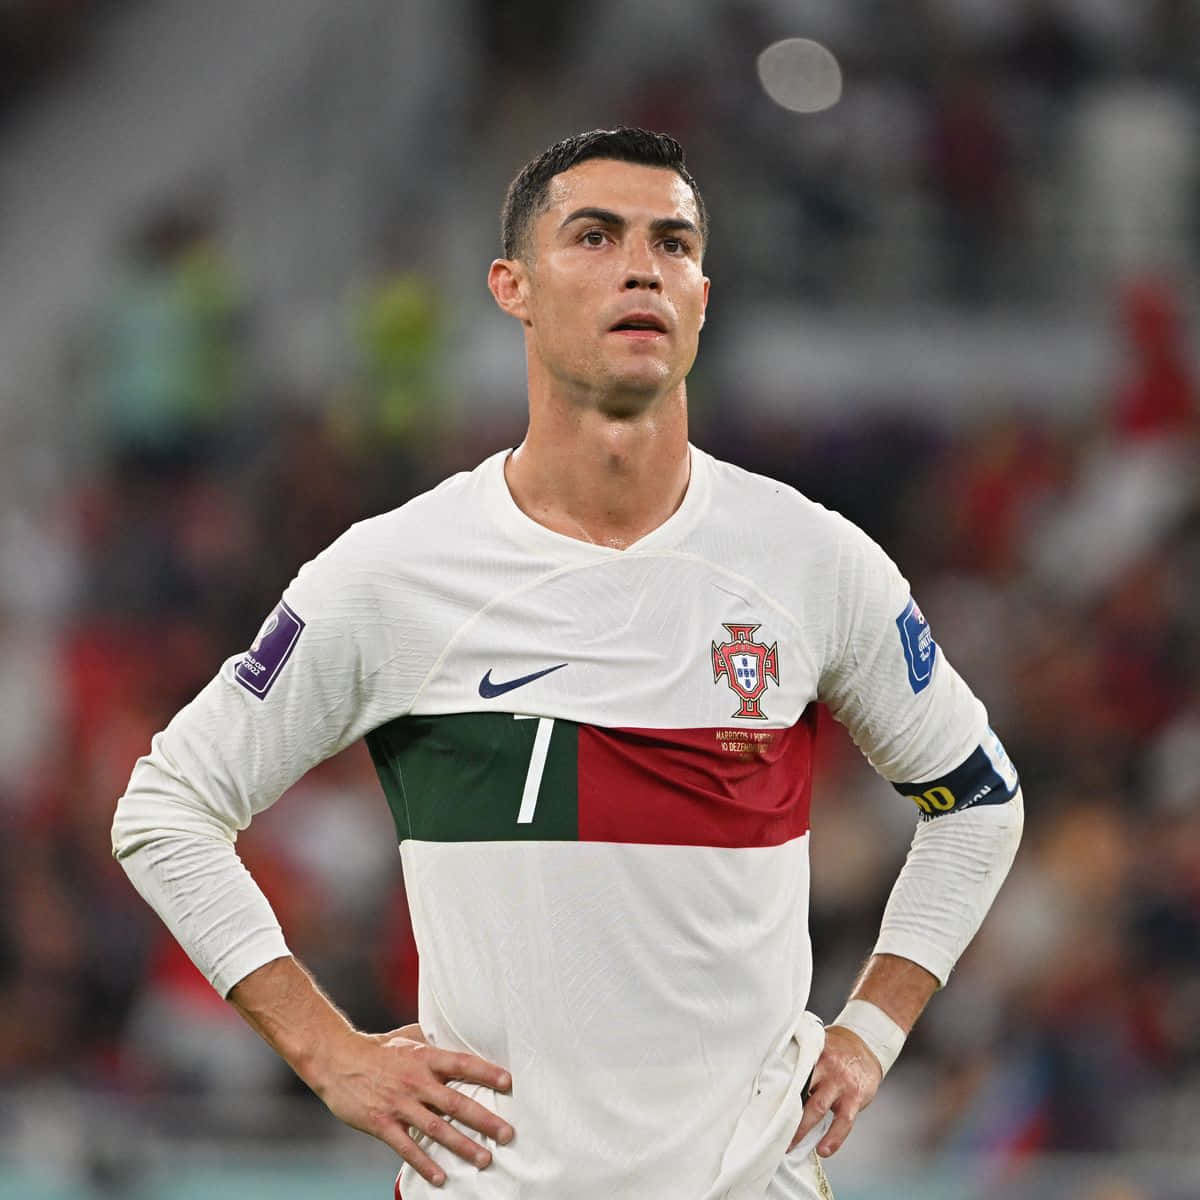 Cristiano Ronaldo, five-time winner of the Ballon d'Or